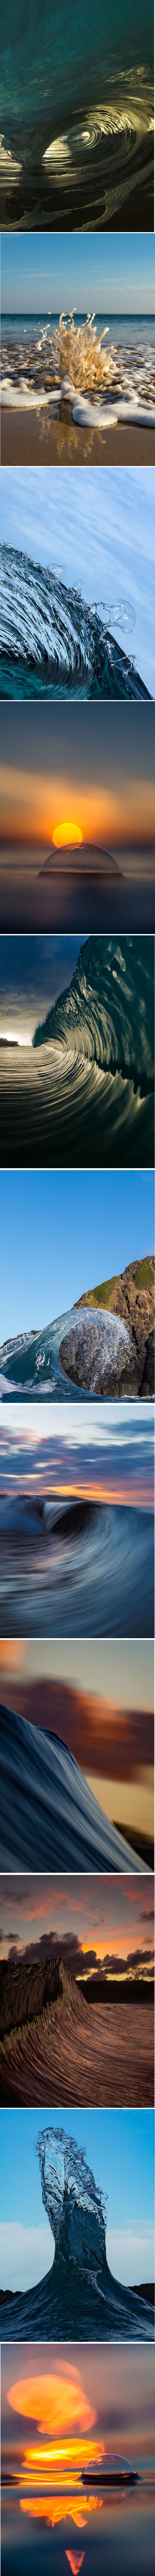 Ovaj fotograf provodi sate u oceanu kako bi uhvatio njegovu veličanstvenu ljepotu